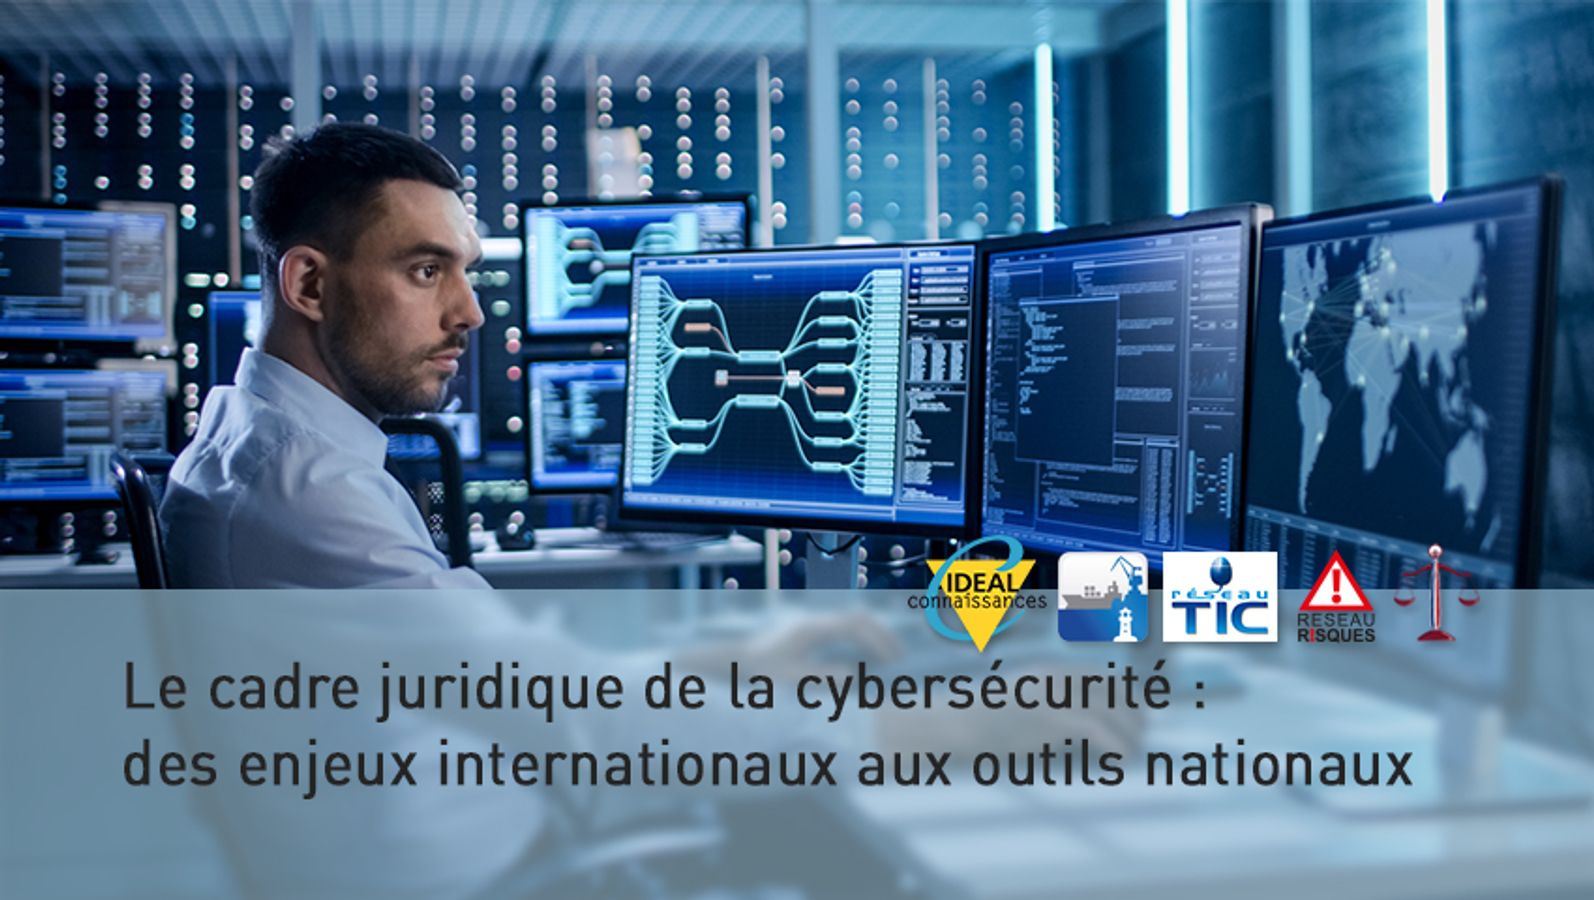 Le cadre juridique de la cybersécurité : des enjeux internationaux aux outils nationaux